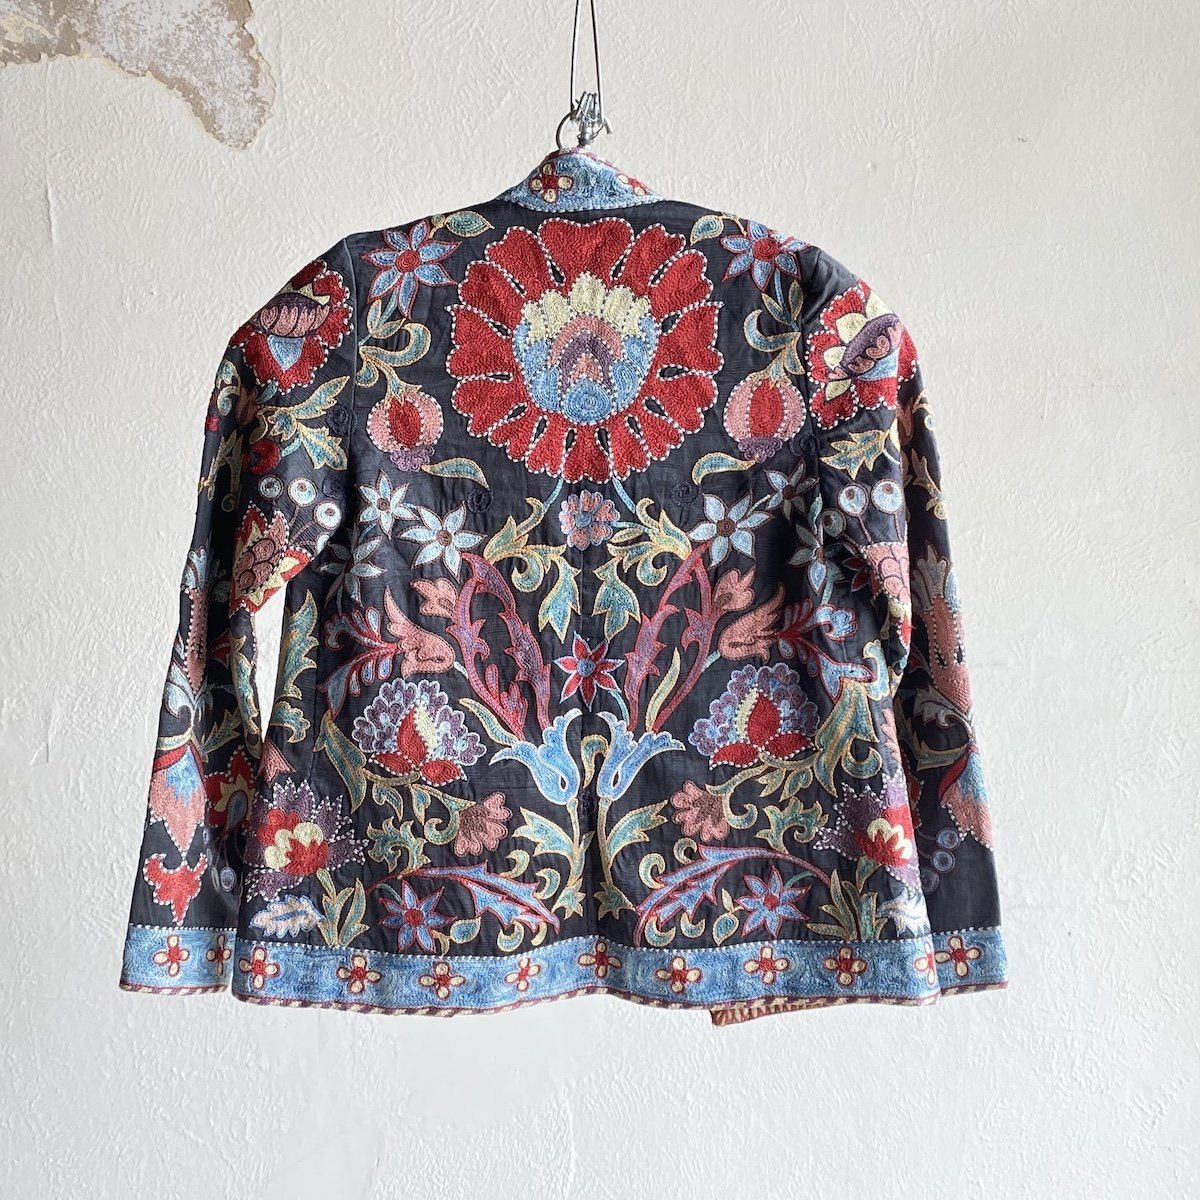 Hand-Stitched Suzani Jacket from Uzbekistan – B. Viz Design